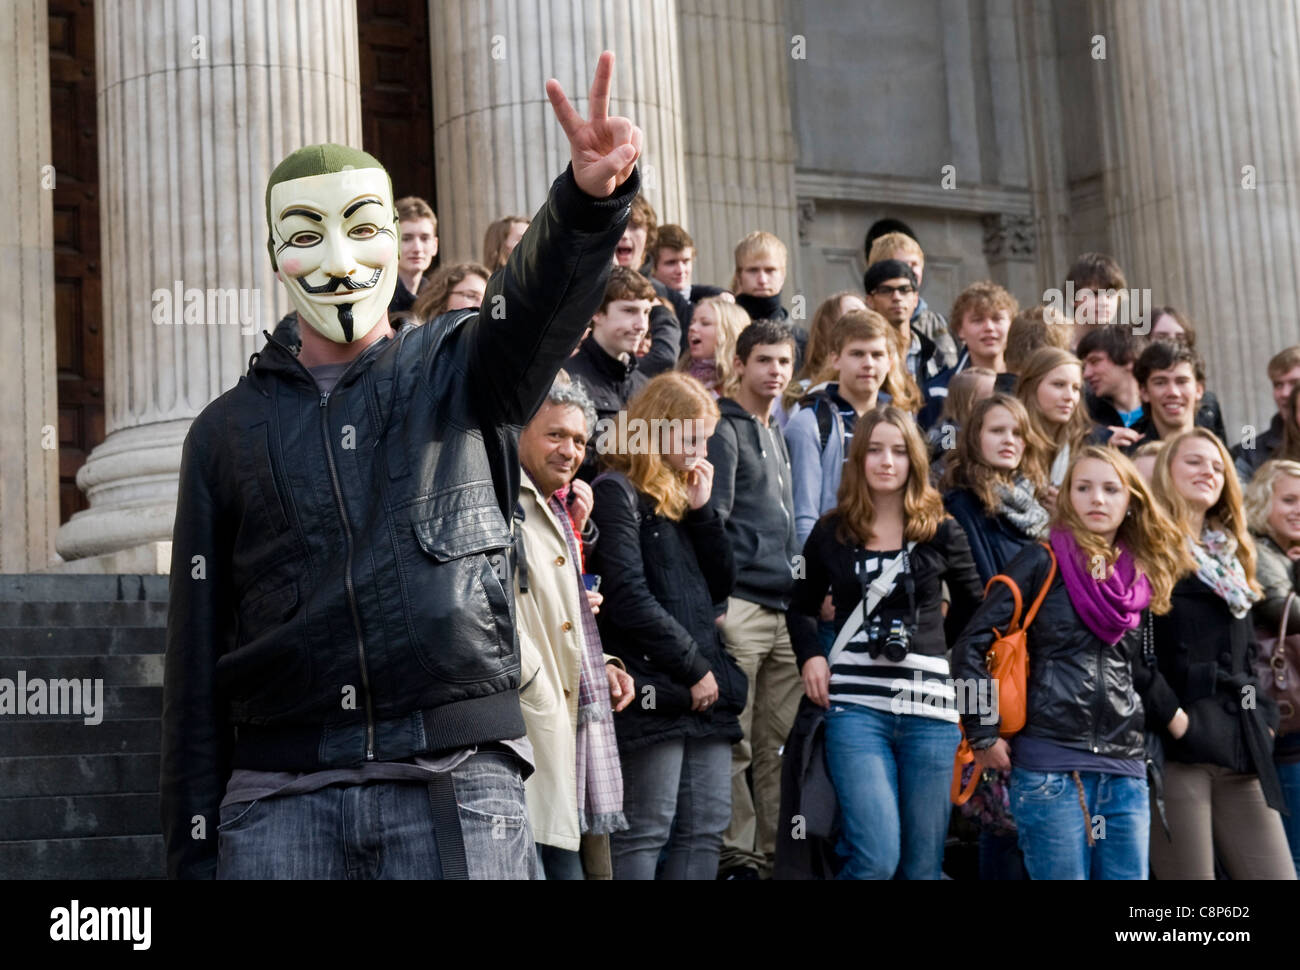 Occuper la Bourse protester , St.Pauls Cathedral, Londres. Certains manifestants ont adopté le masque de V pour Vendetta. Banque D'Images